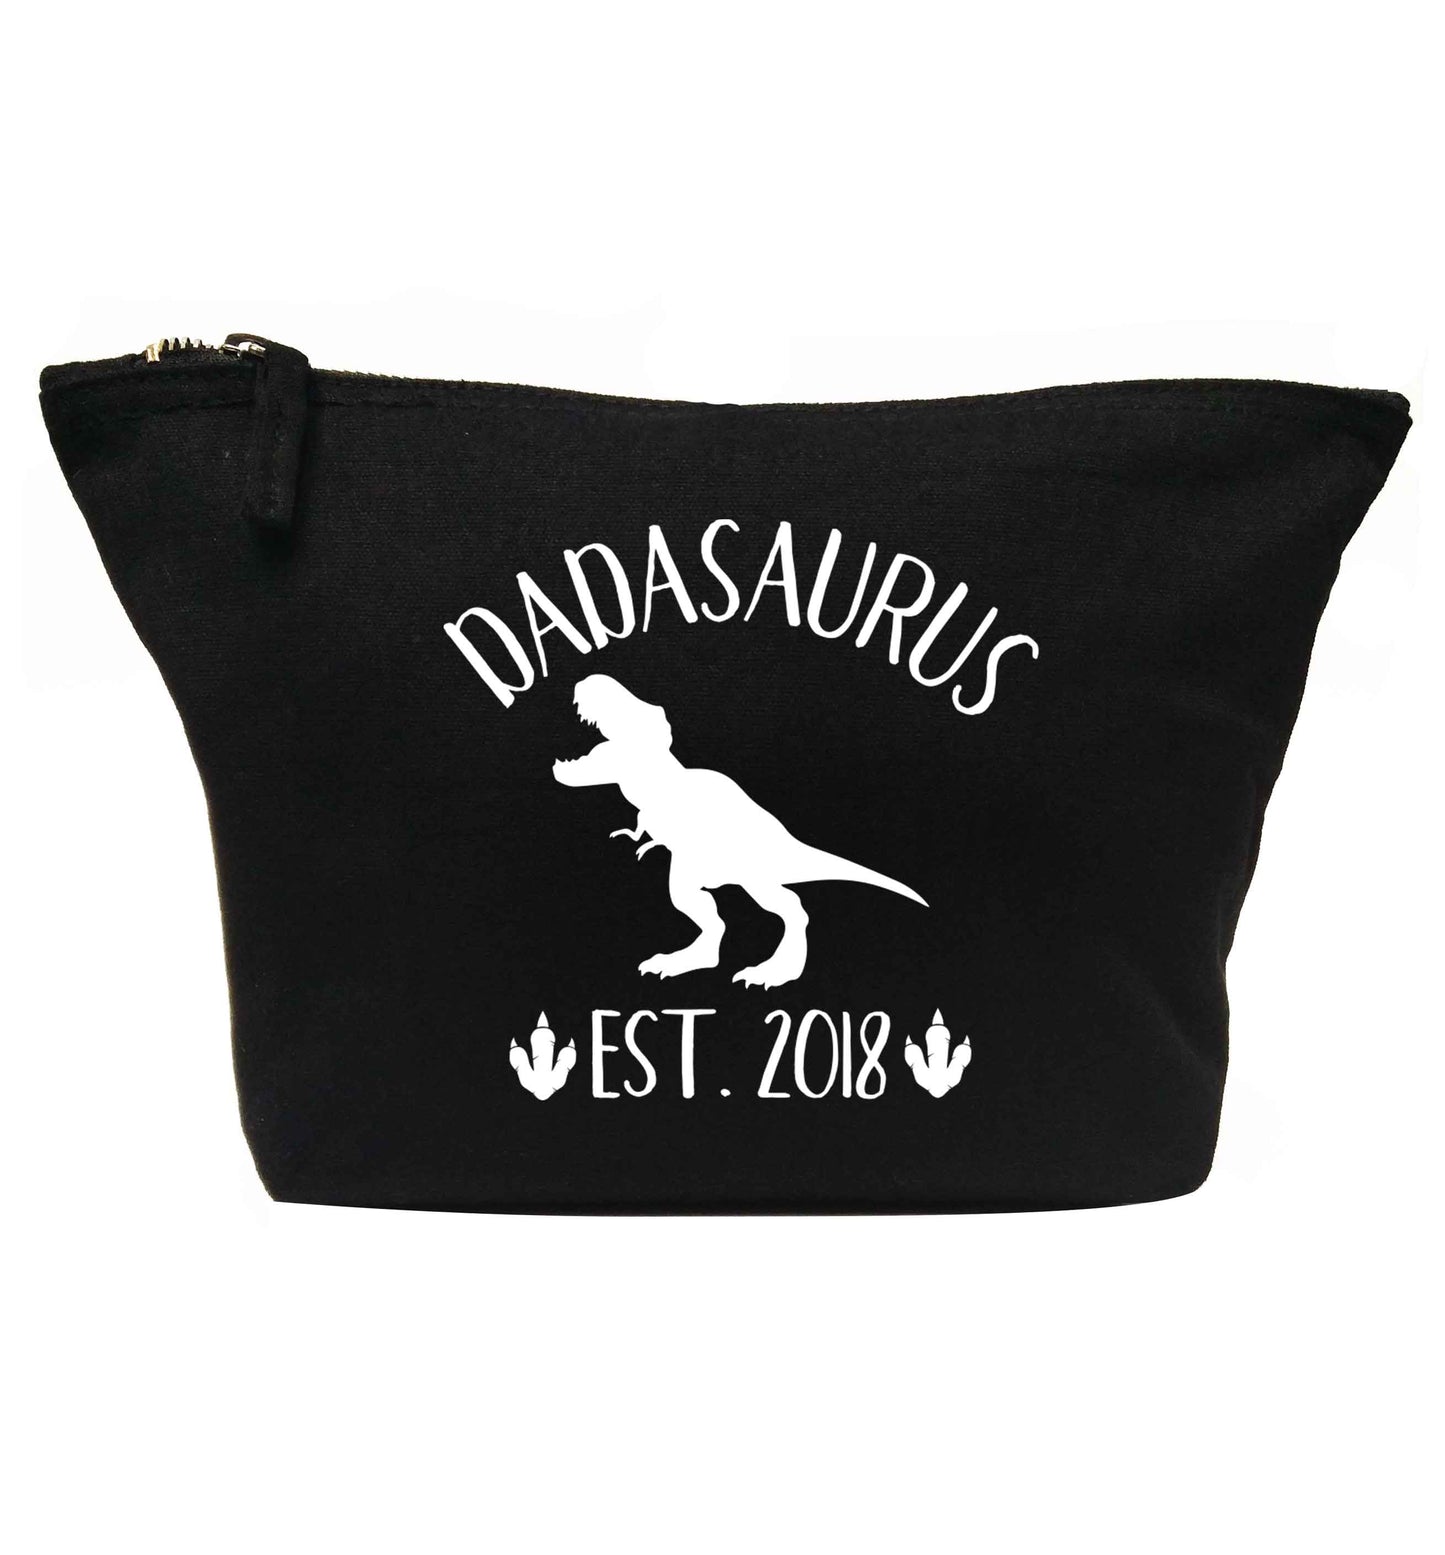 Personalised dadasaurus since (custom date) | makeup / wash bag